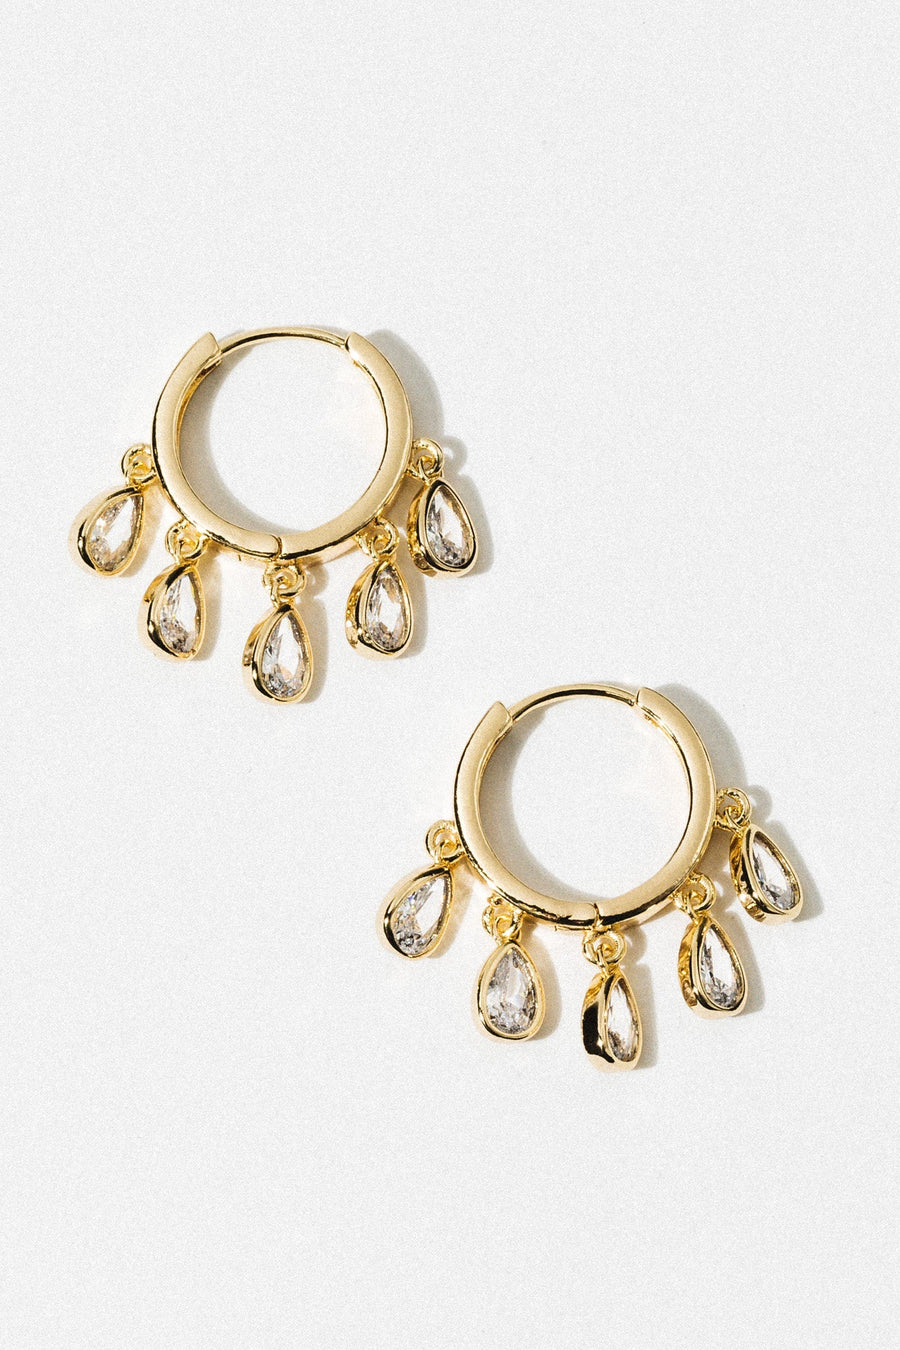 DLUXCA Jewelry Gold Eloise CZ Earrings